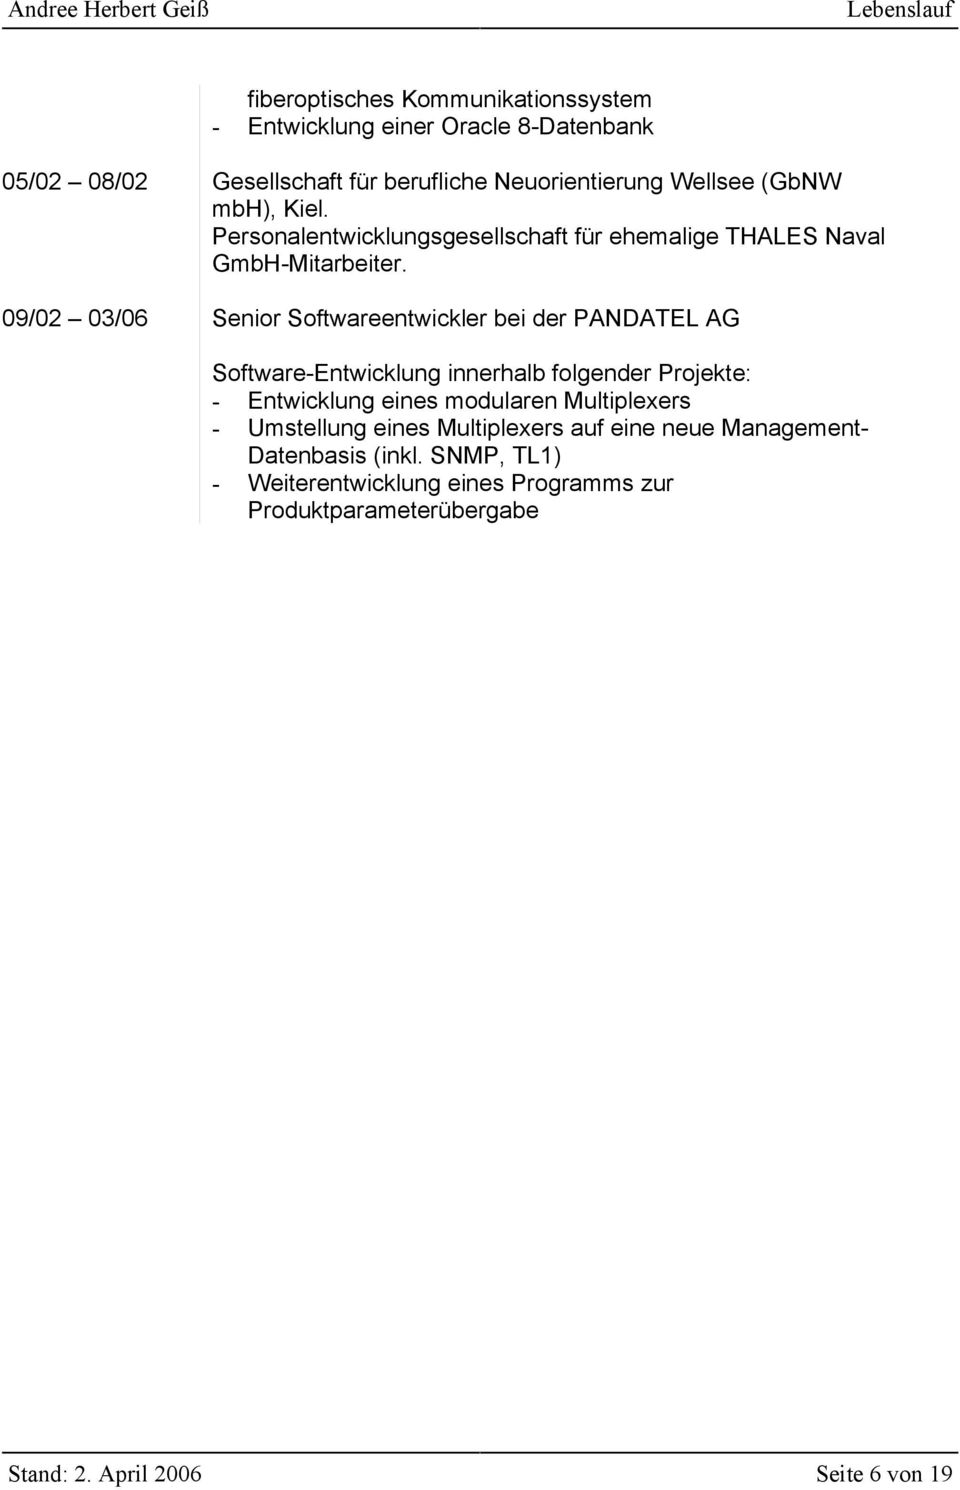 09/02 03/06 Senior Softwareentwickler bei der PANDATEL AG Software-Entwicklung innerhalb folgender Projekte: - Entwicklung eines